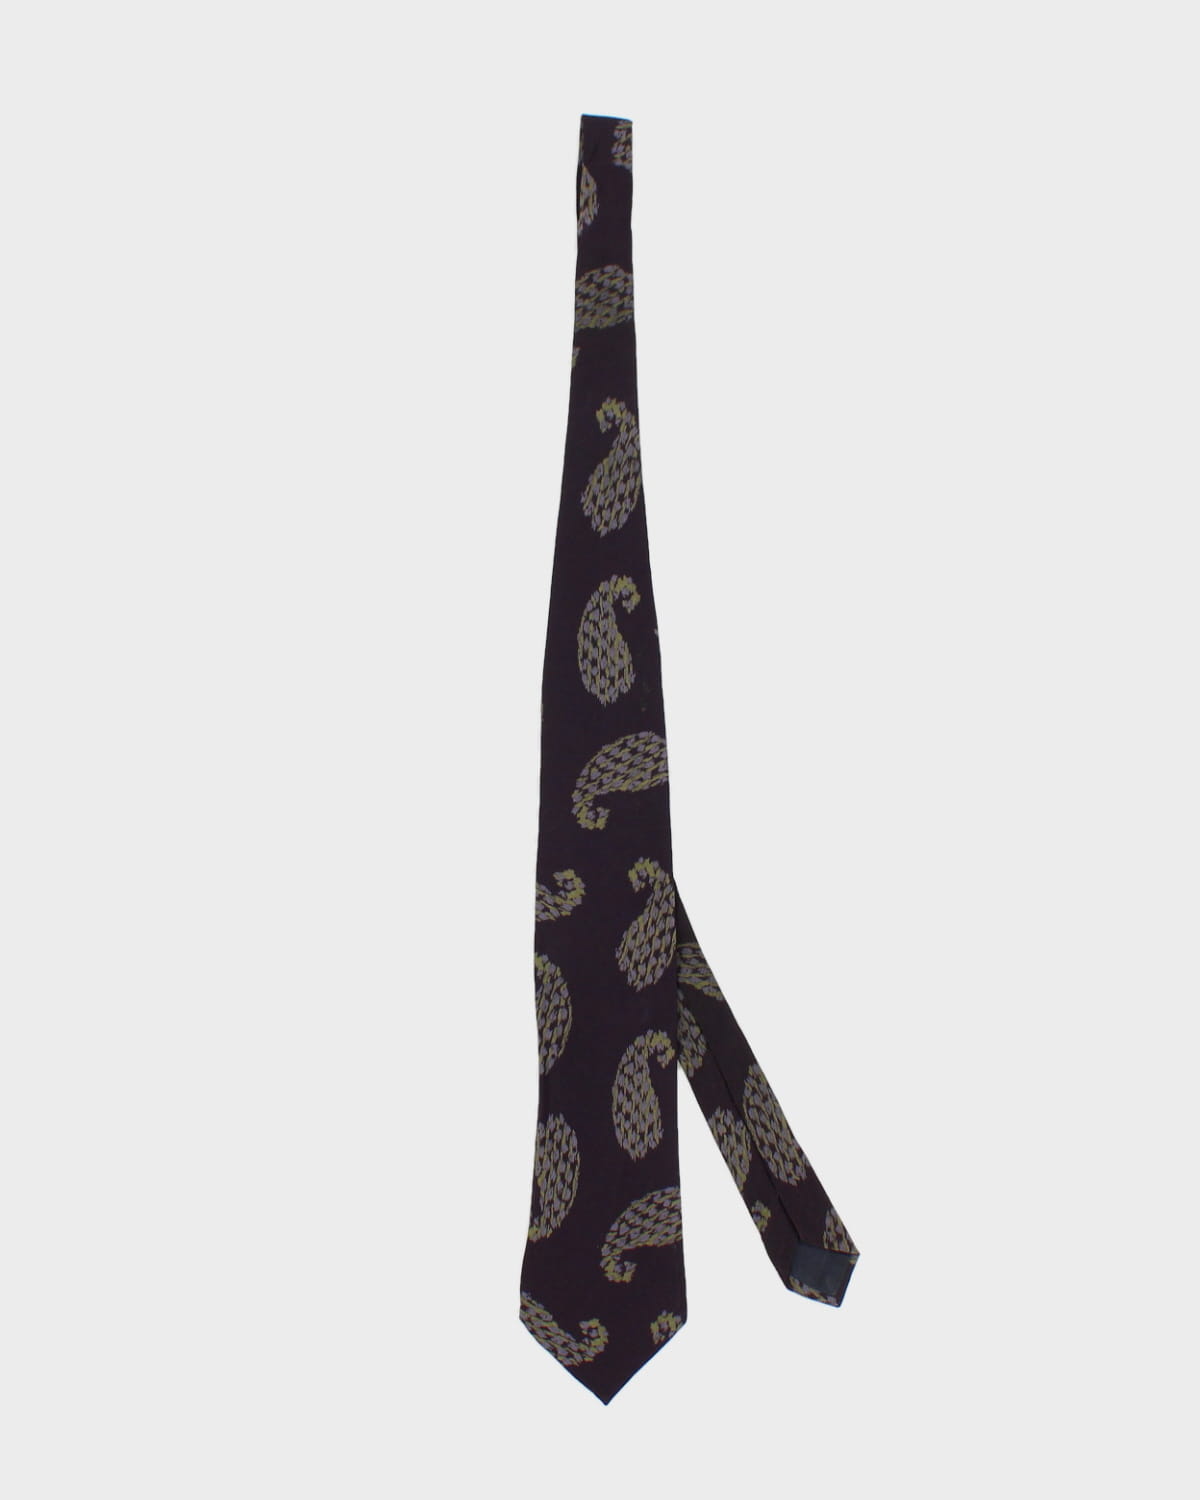 Vintage Giorgio Armani Cravatte Tie